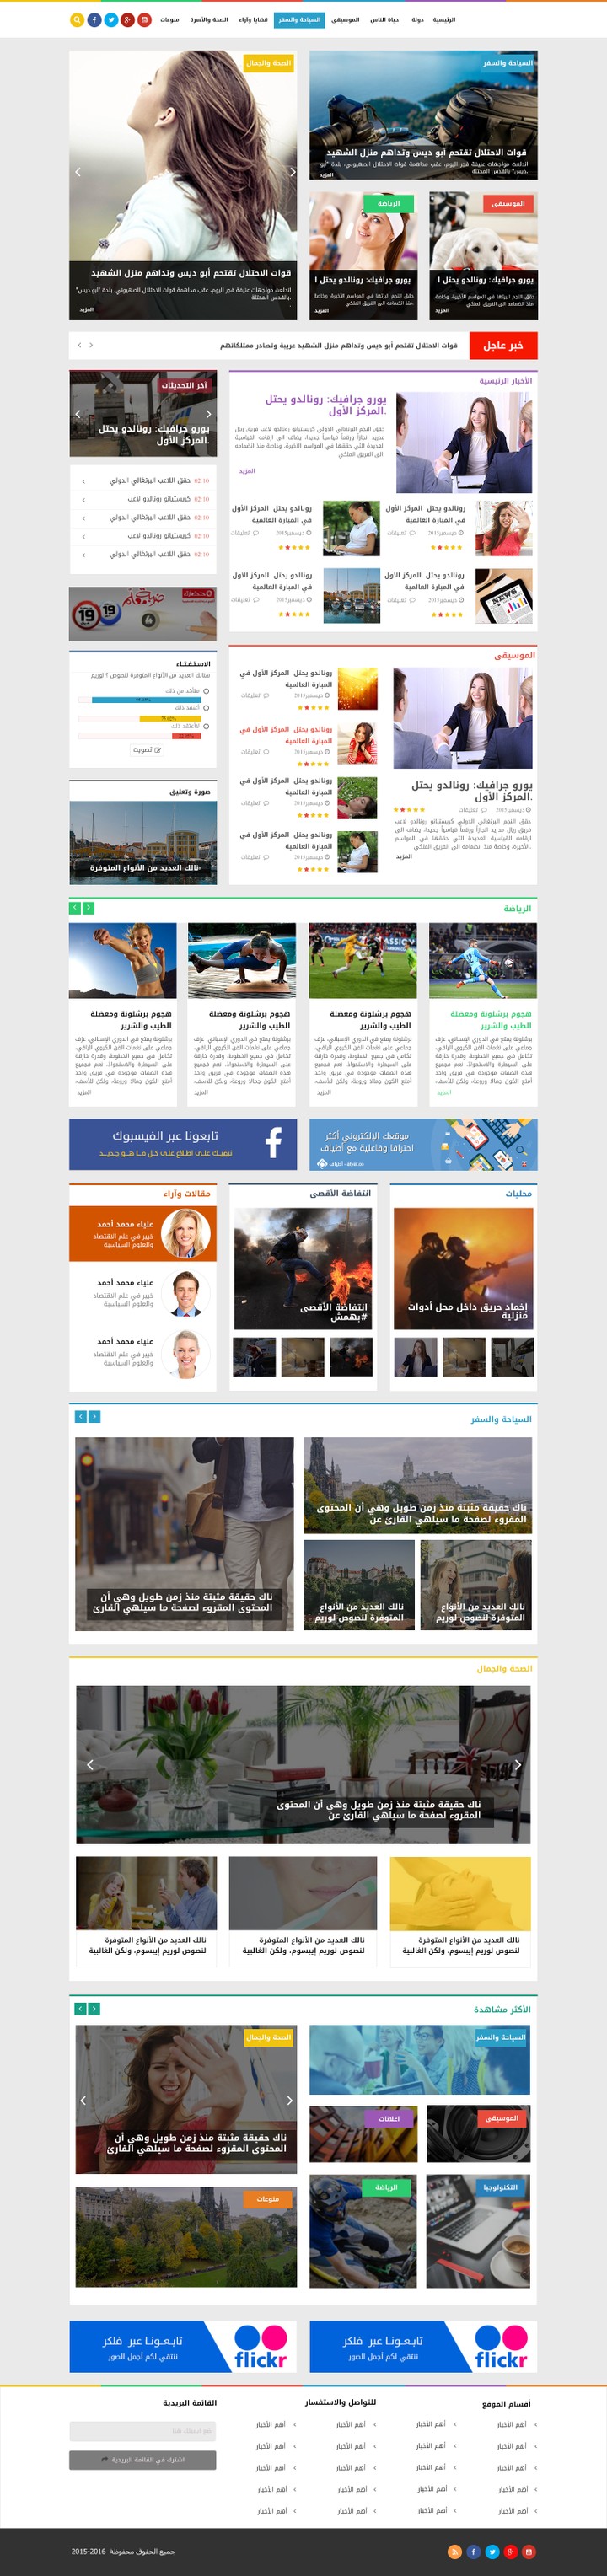 تصميم موقع الكتروني إخباري باللغتين العربية والانجليزية مع الصفحات الداخلية له